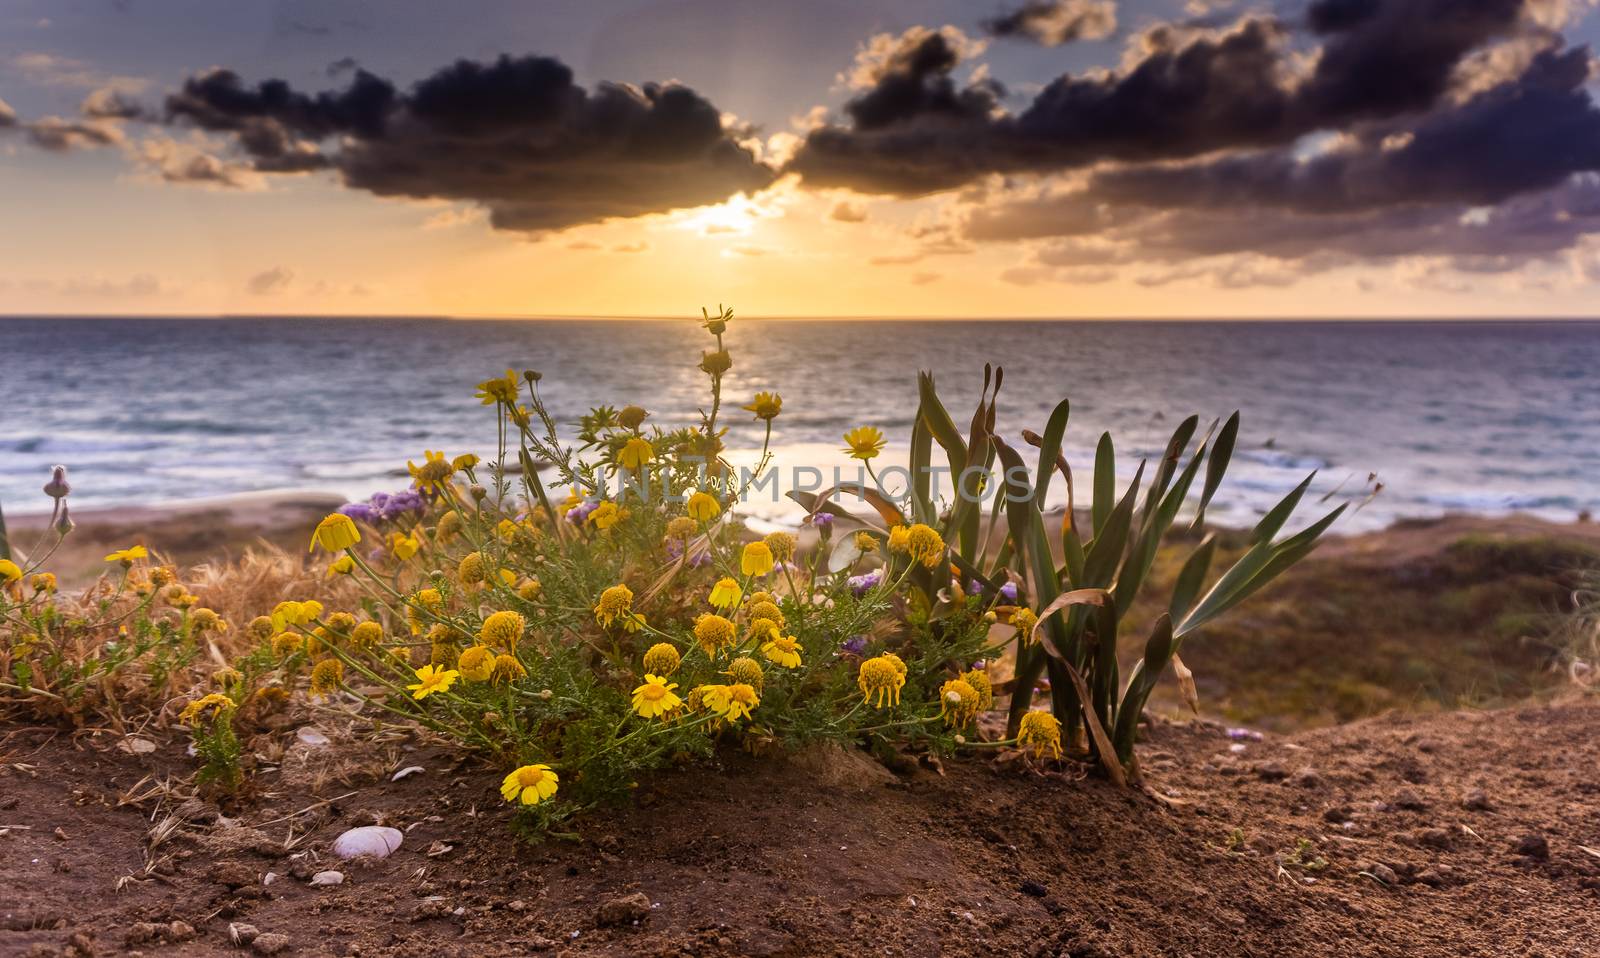 Flowers on mediterranean beach in sunset sea view by javax